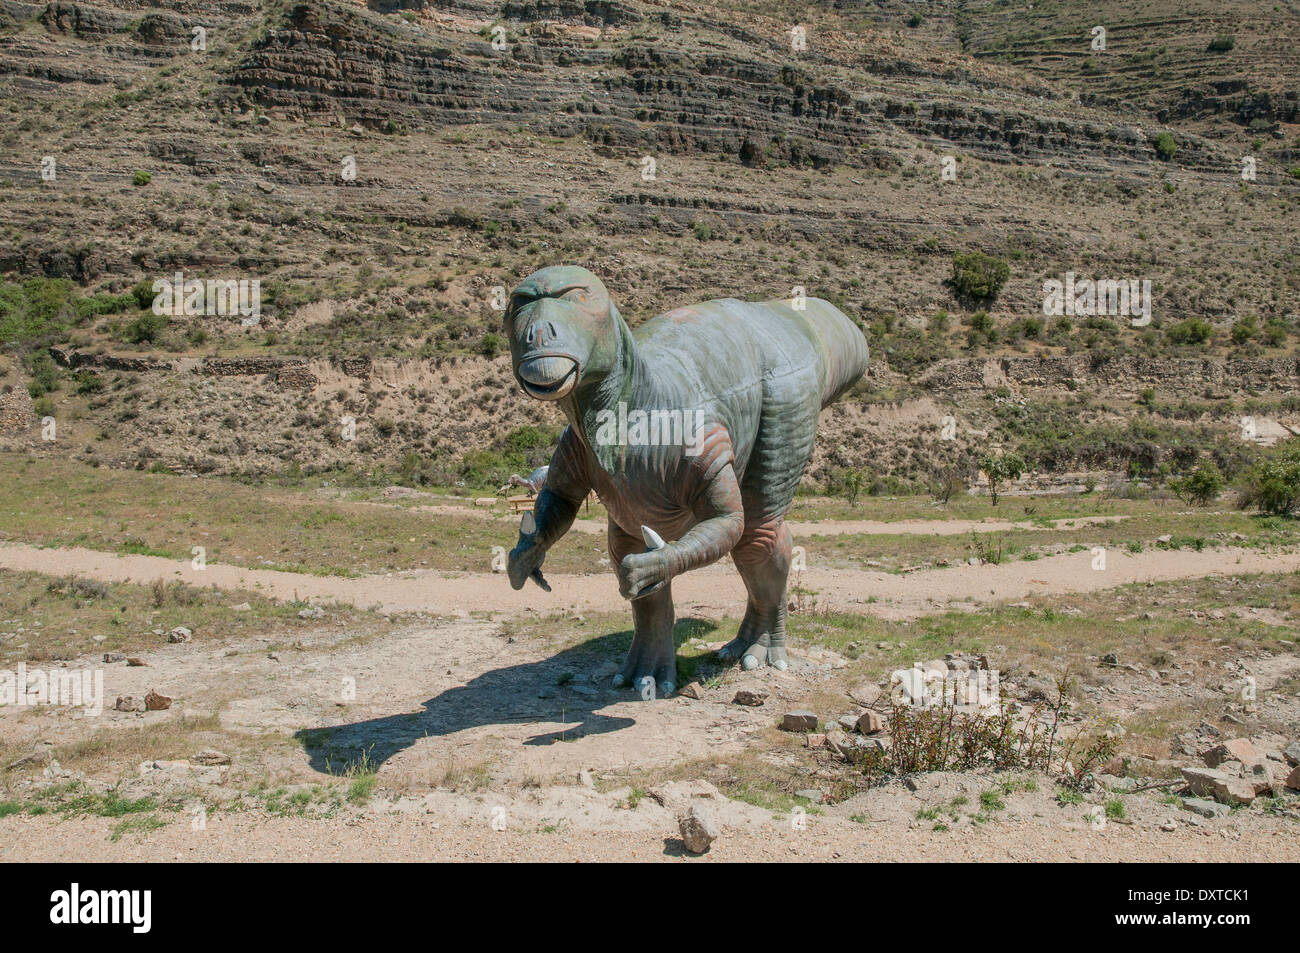 Modelli ricreazione in dimensioni reali di dinosauri realizzati in vetroresina e cemento nel sito paleontologico di Munilla, la Rioja, Spagna. Foto Stock